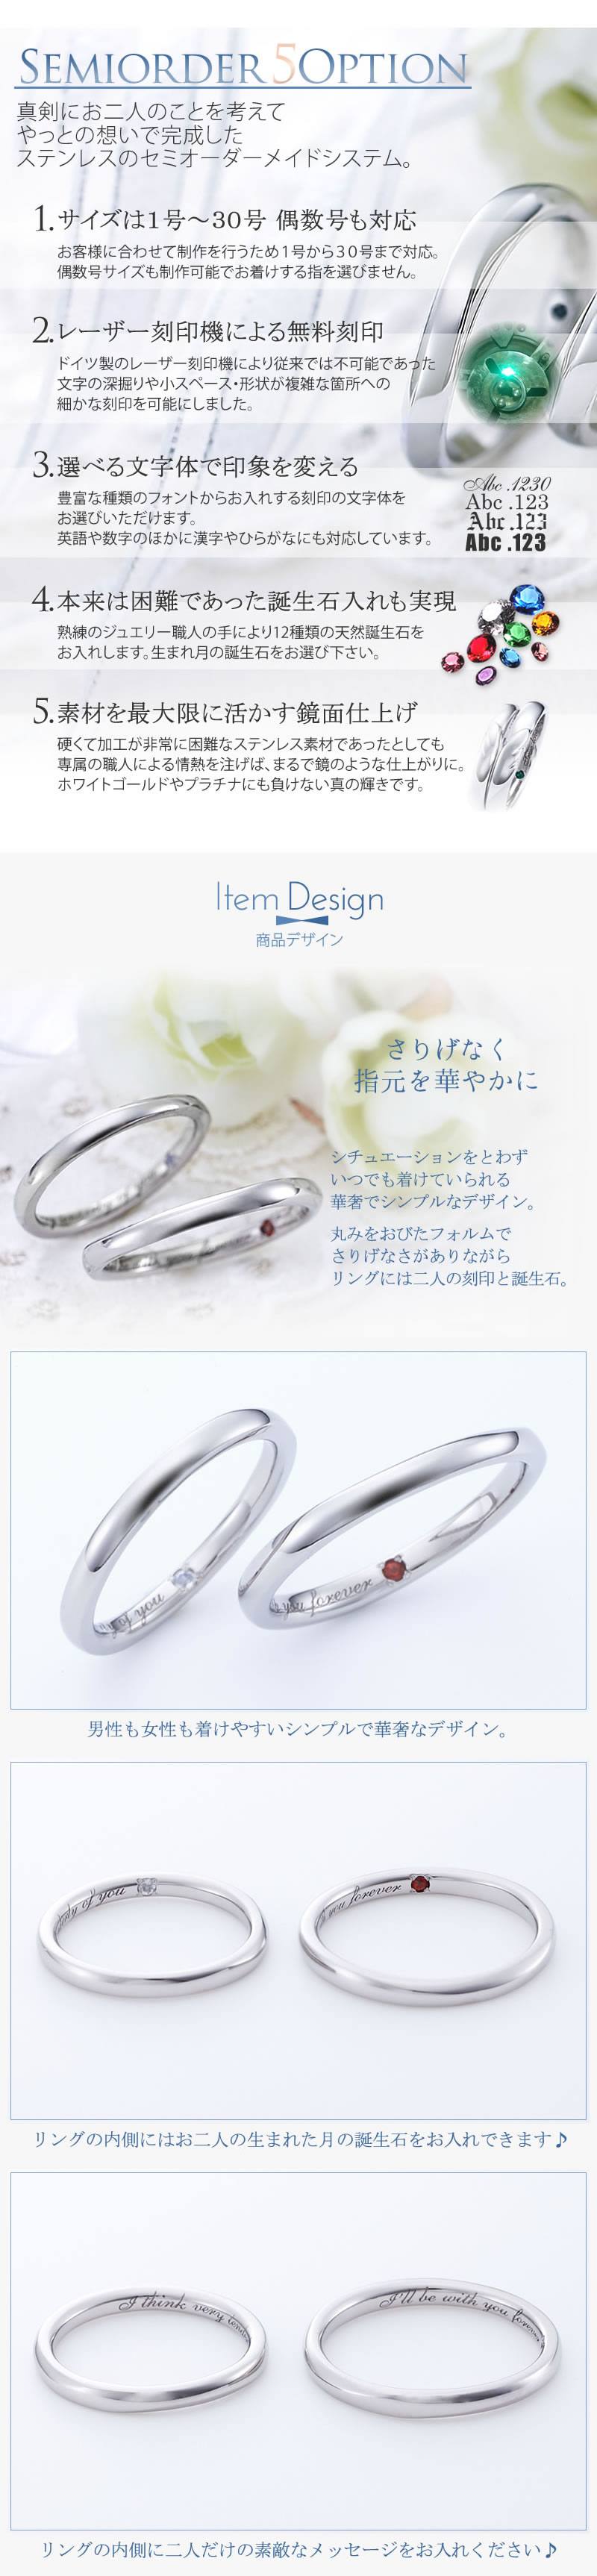 【結婚指輪】セミオーダーメイドステンレスリング ST112R-KS